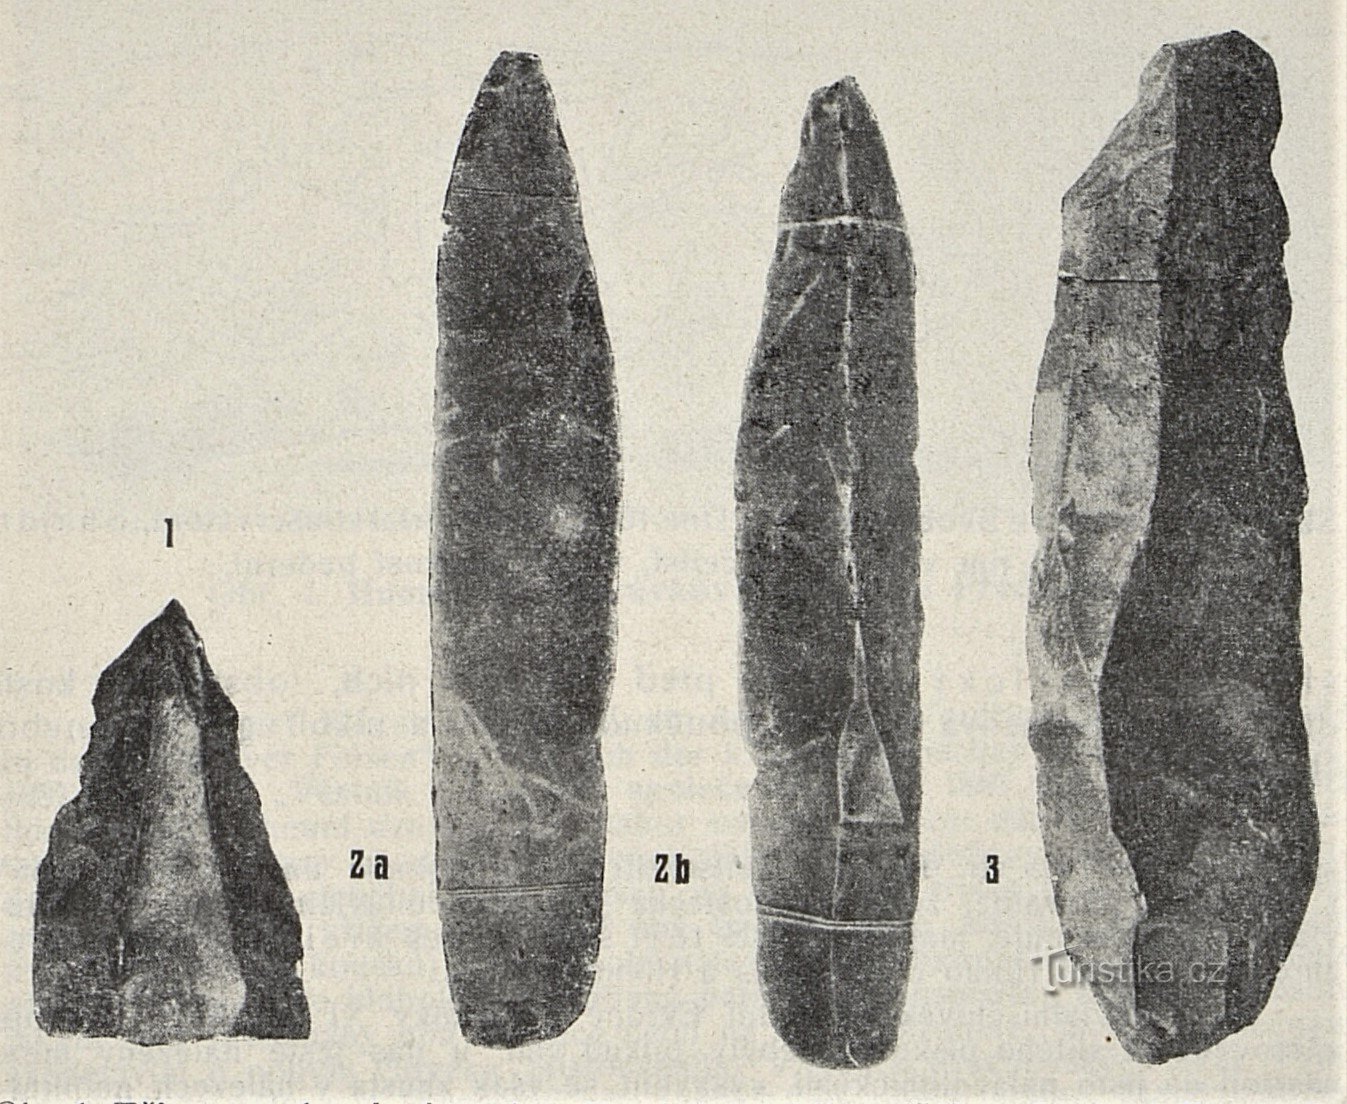 Ngành công nghiệp đá từ bộ xương voi ma mút ở Svobodné Dvory (1899)